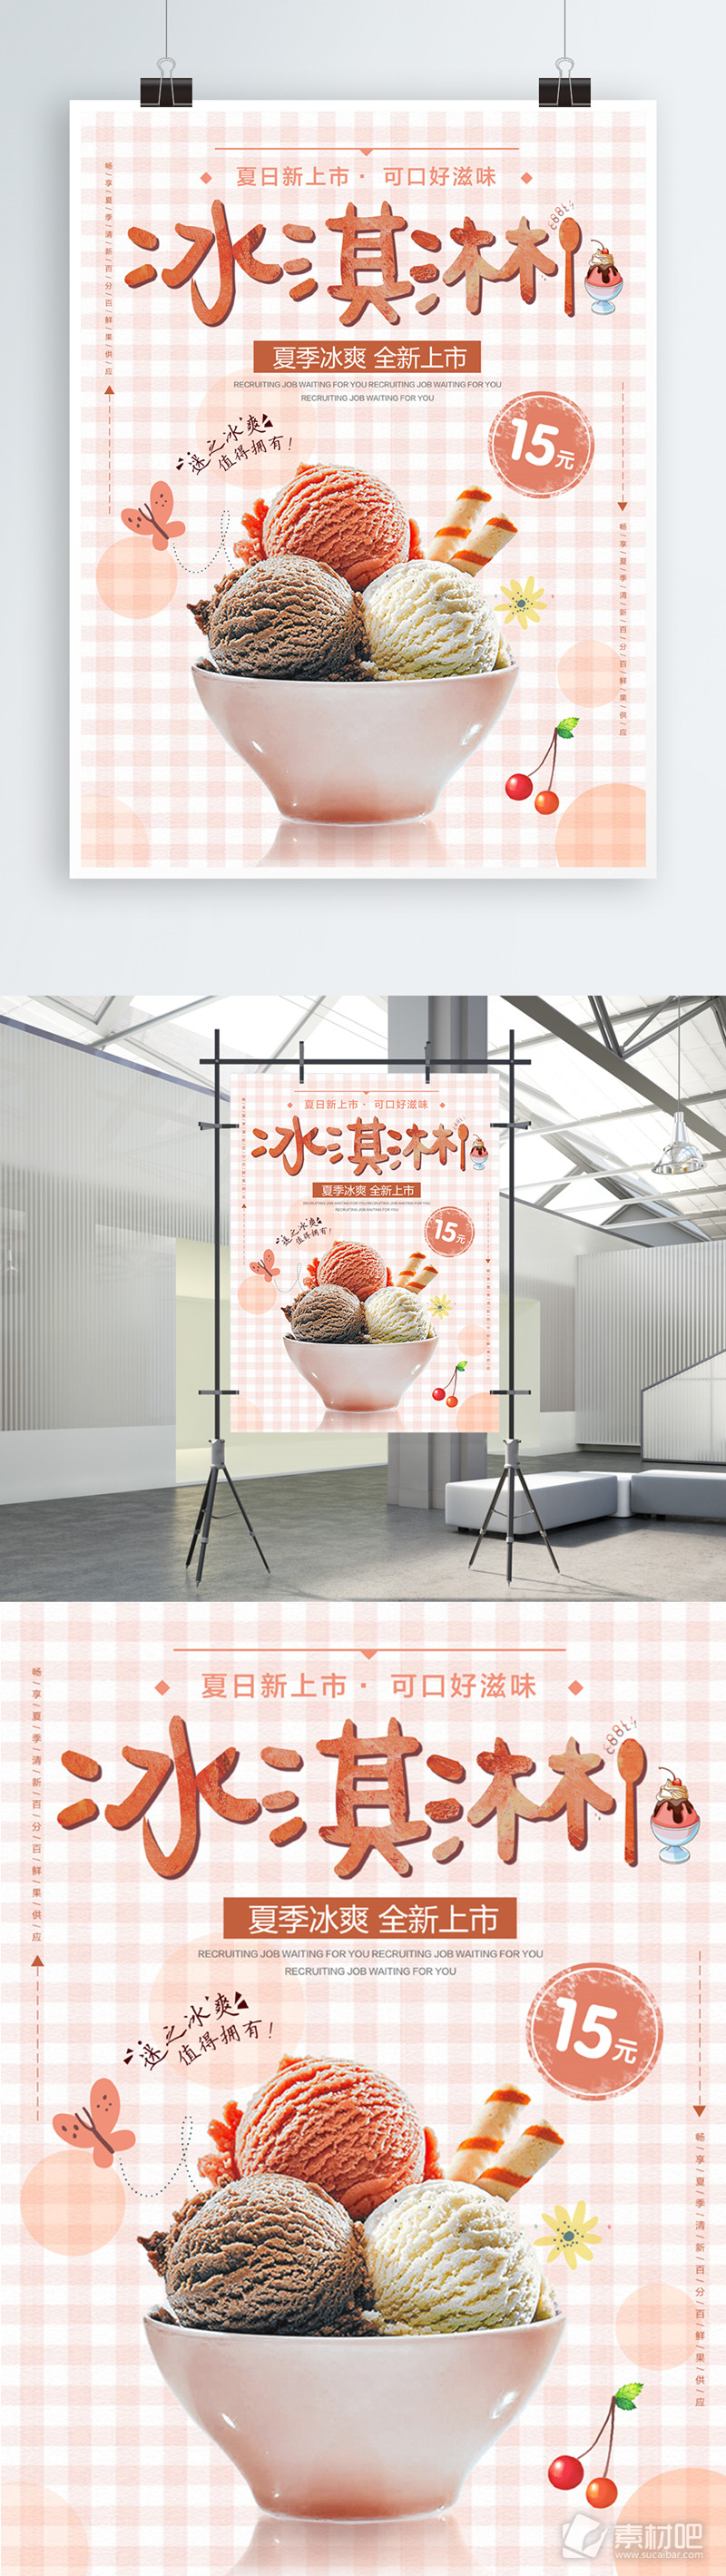 清新夏季夏日甜品冰淇淋美食促销海报